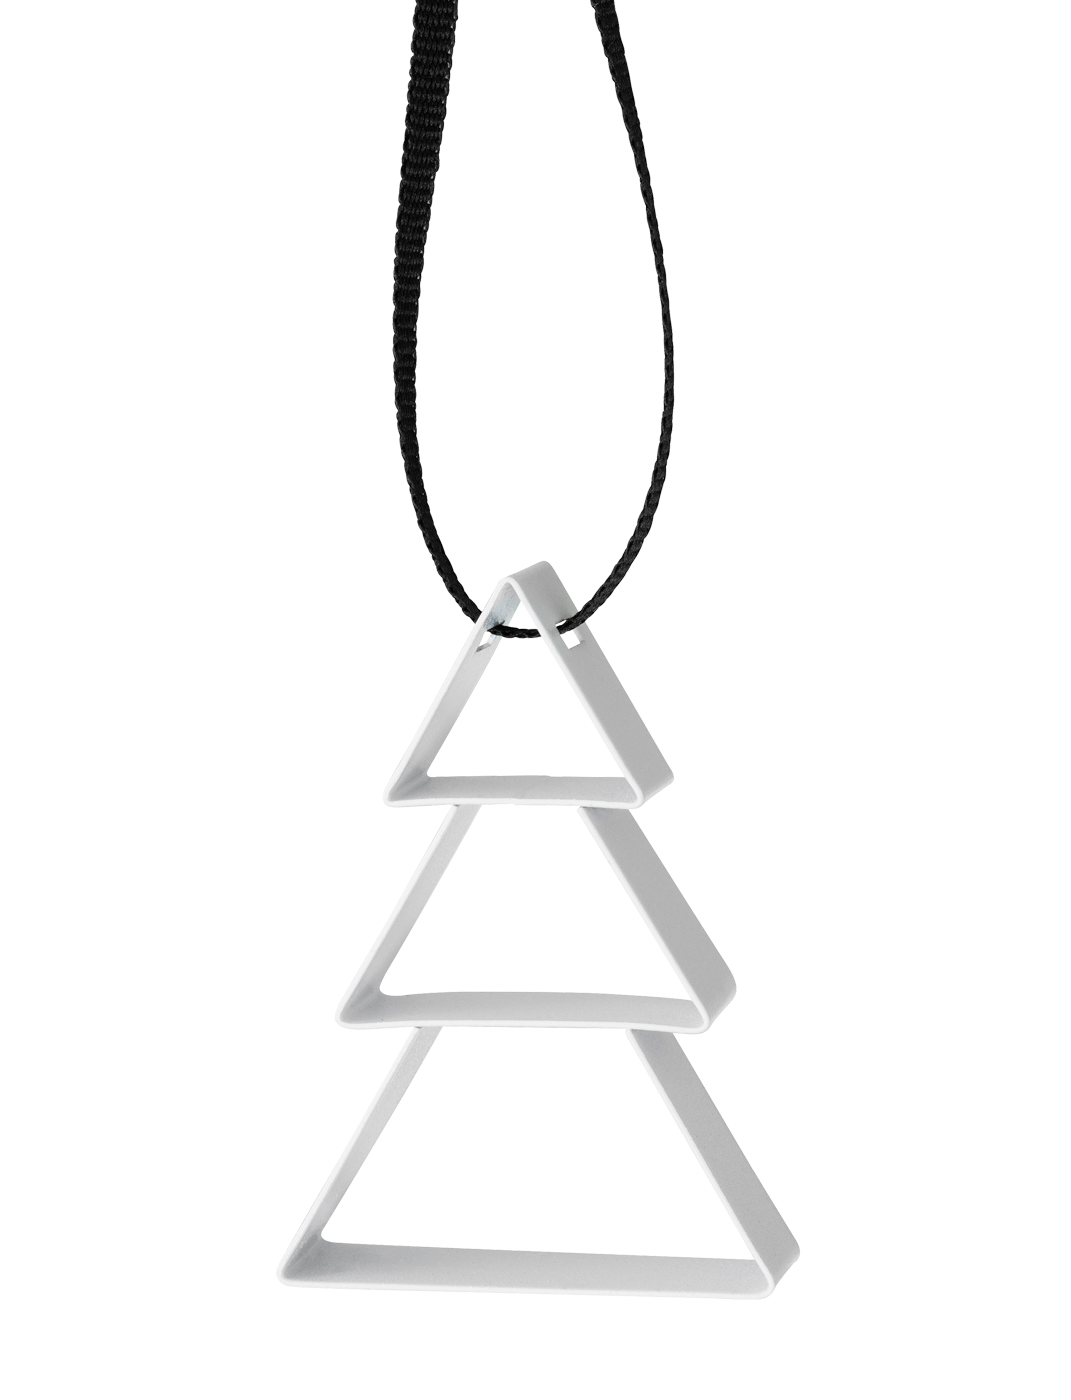 Figura Weihnachtsbaum soft white - Maße: 5,5 x 1,3 x 4 cm - von Stelton